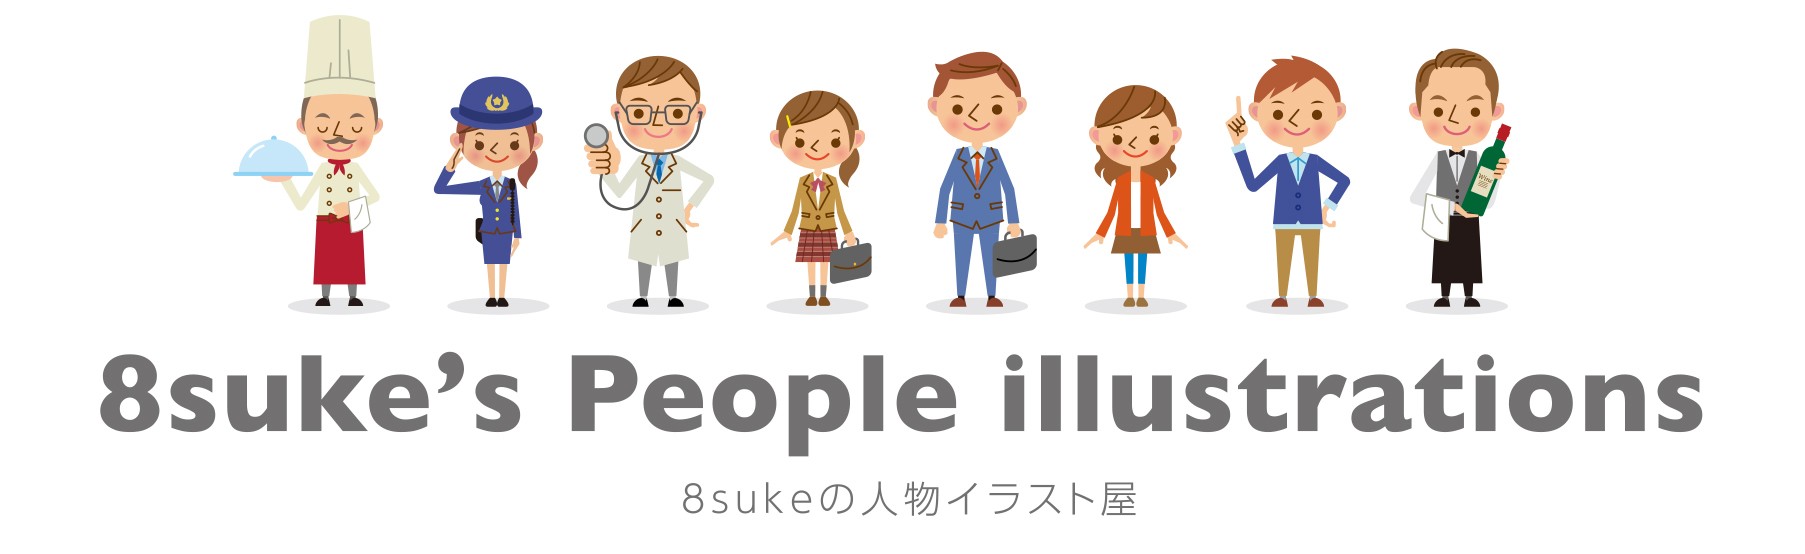 商用ok 個人でイラスト素材のダウンロード販売開始 8sukeの人物